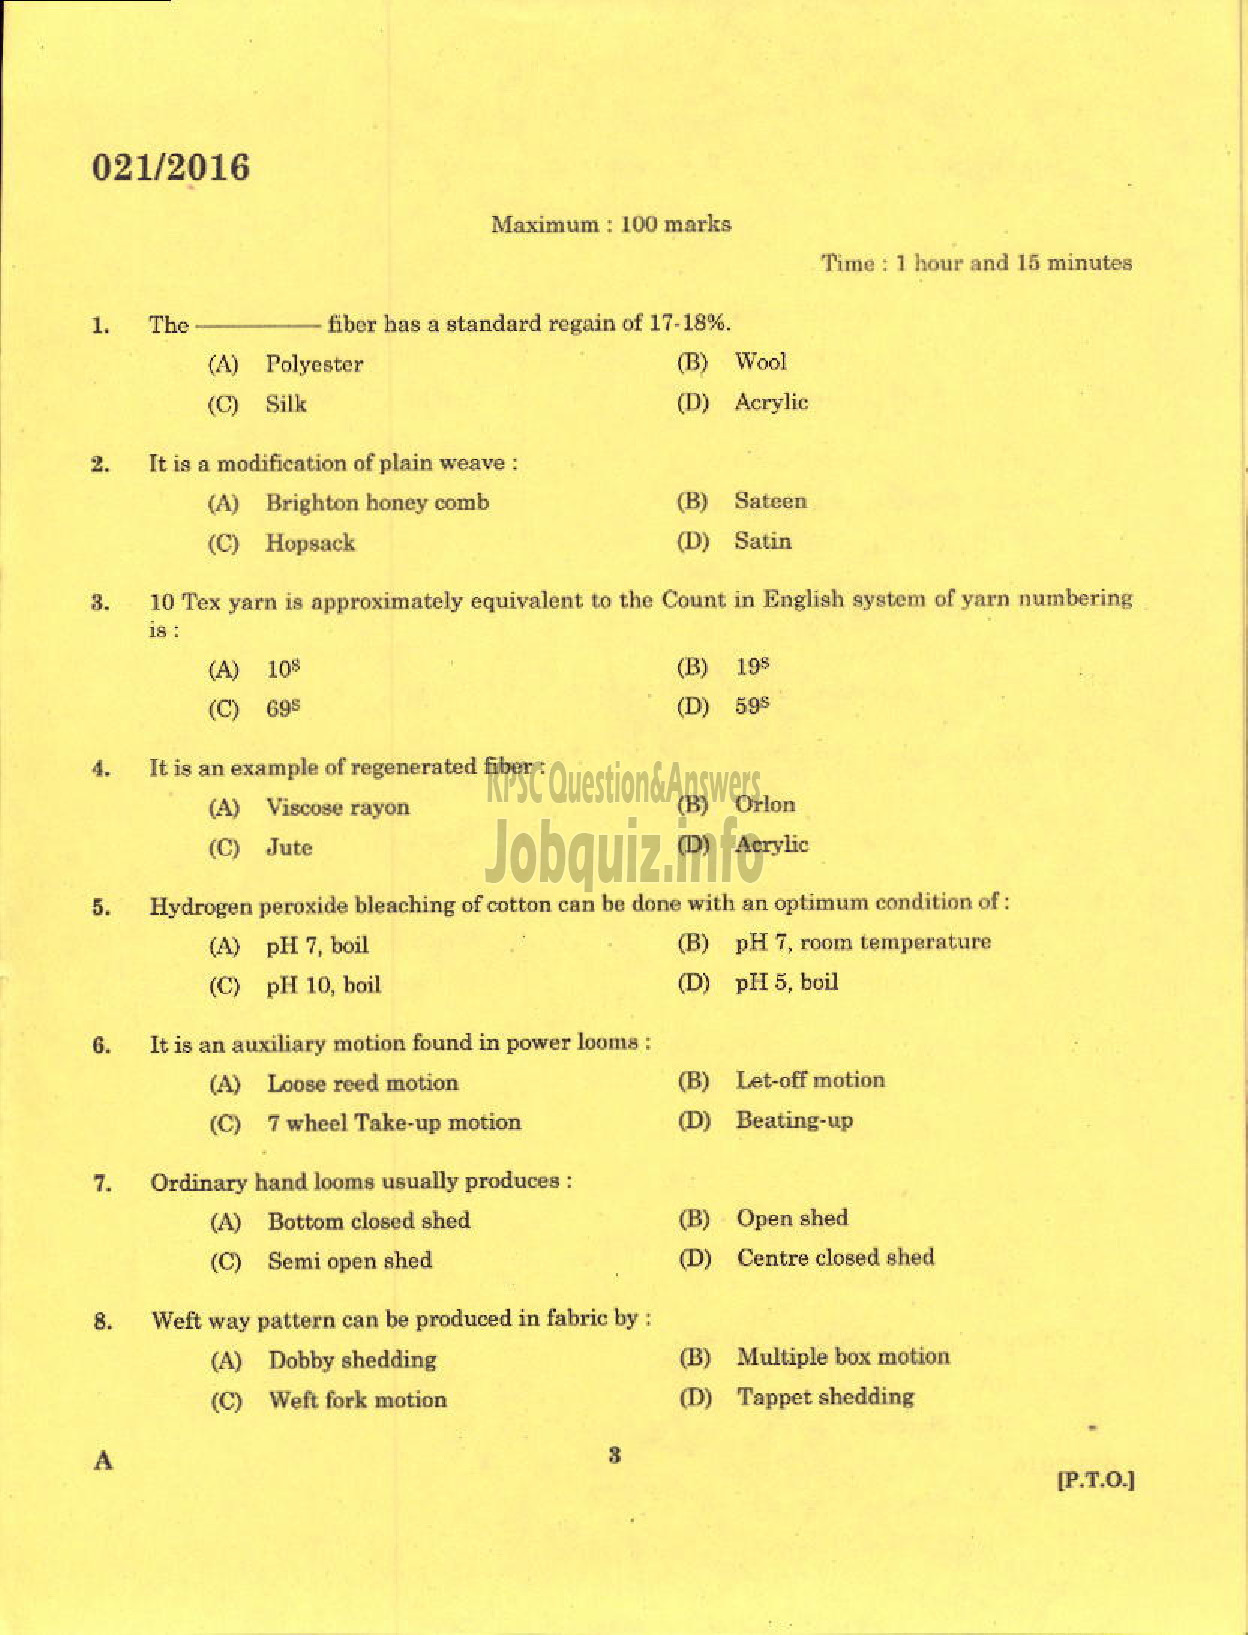 Kerala PSC Question Paper - TECHNICAL SUPERVISORS KSHWCS LTD HANTEX-1